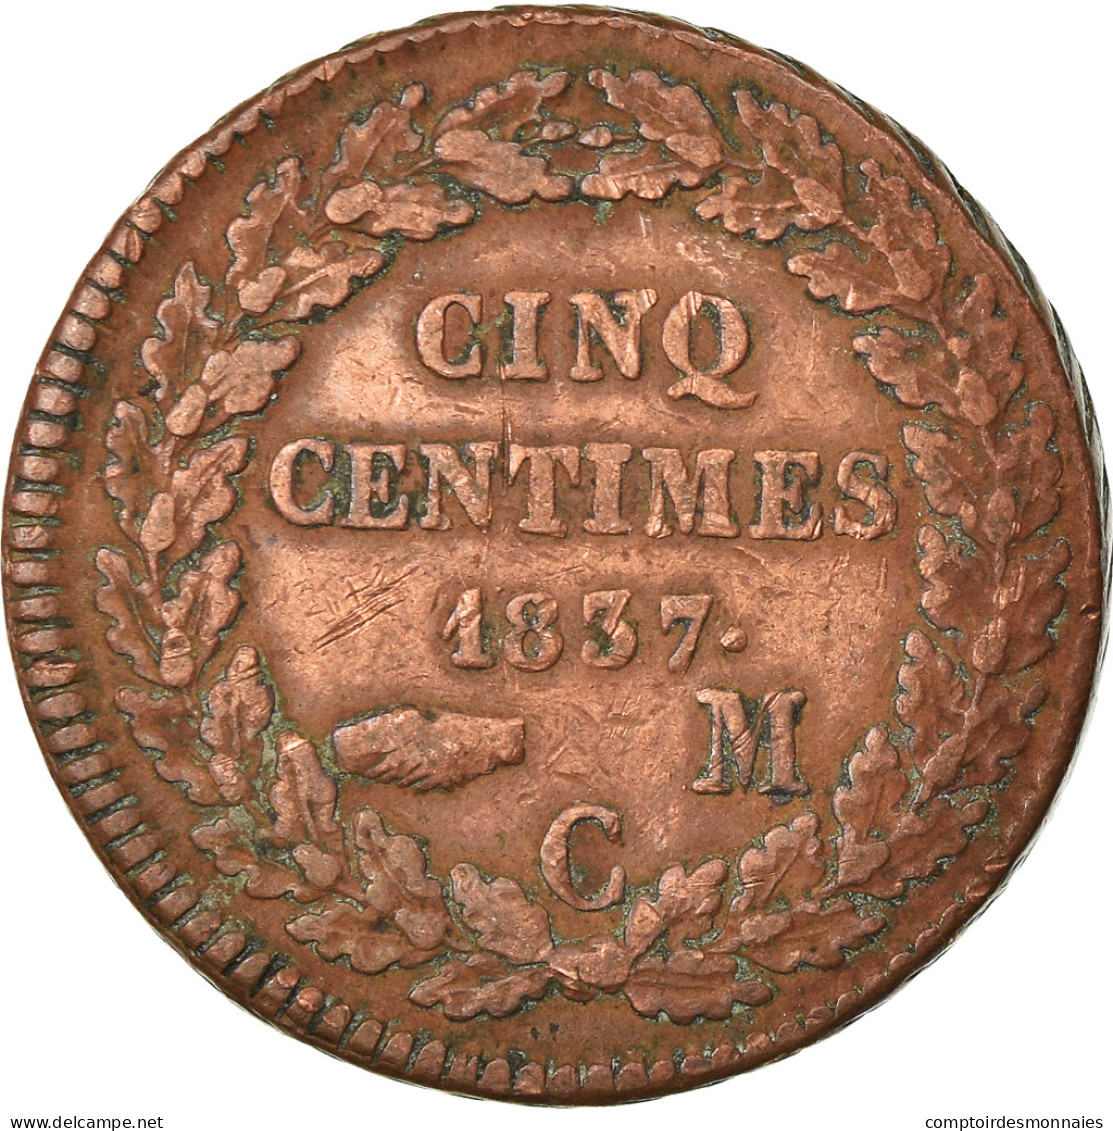 Monnaie, Monaco, Honore V, 5 Centimes, Cinq, 1837, Monaco, TB+, Cuivre - 1819-1922 Onorato V, Carlo III, Alberto I